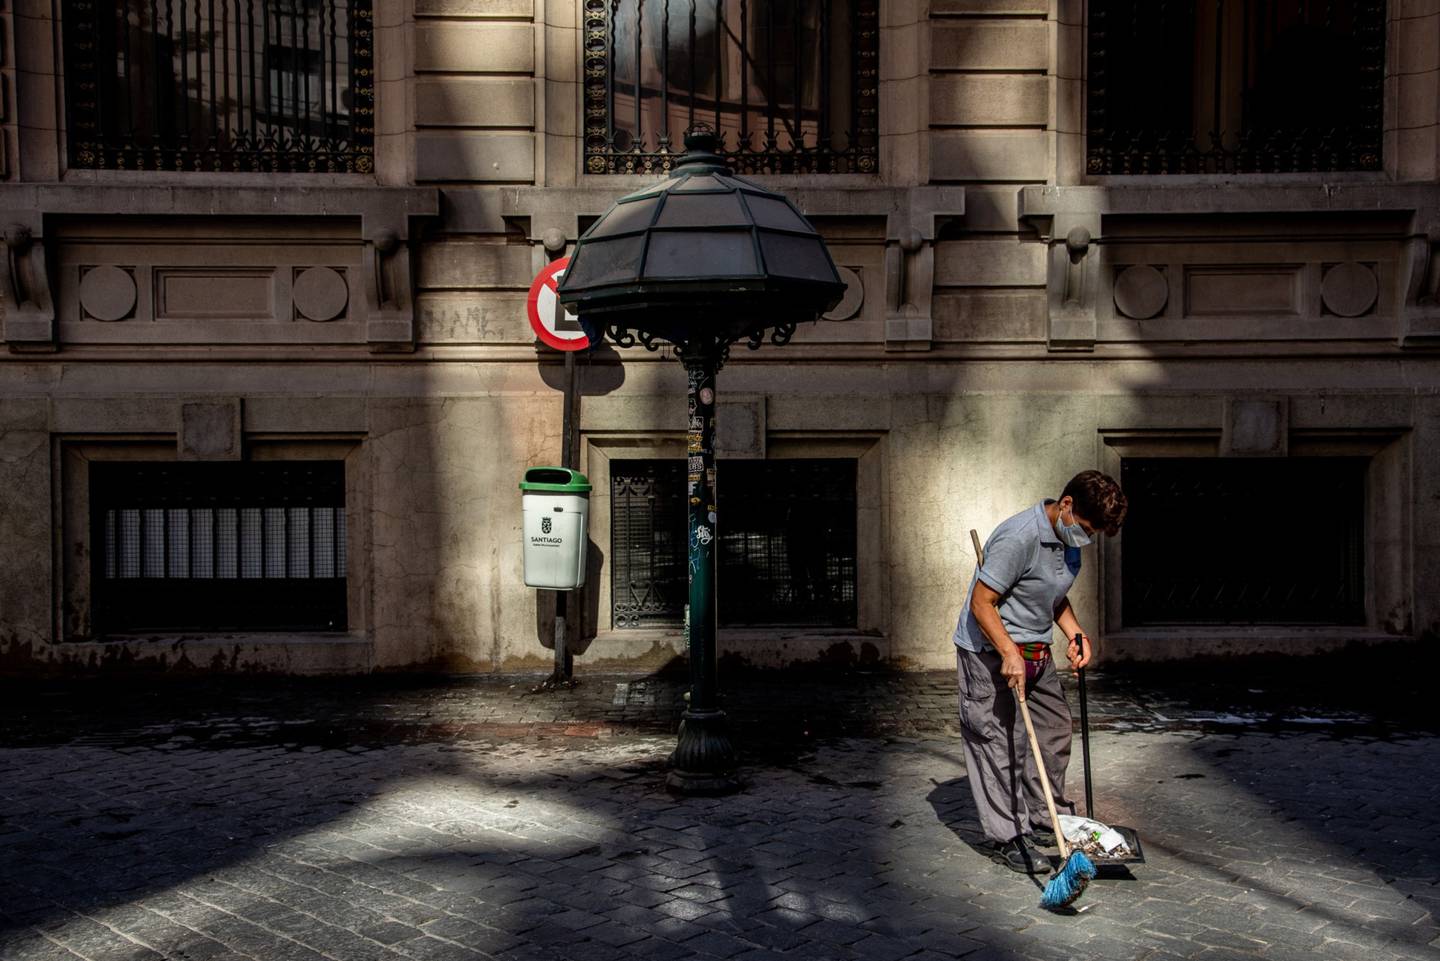 Un trabajador usa una máscara protectora mientras limpia una calle antes de una orden de cuarentena en Santiago, Chile, el jueves 26 de marzo de 2020. Fotógrafo: Cristobal Olivares/Bloombergdfd